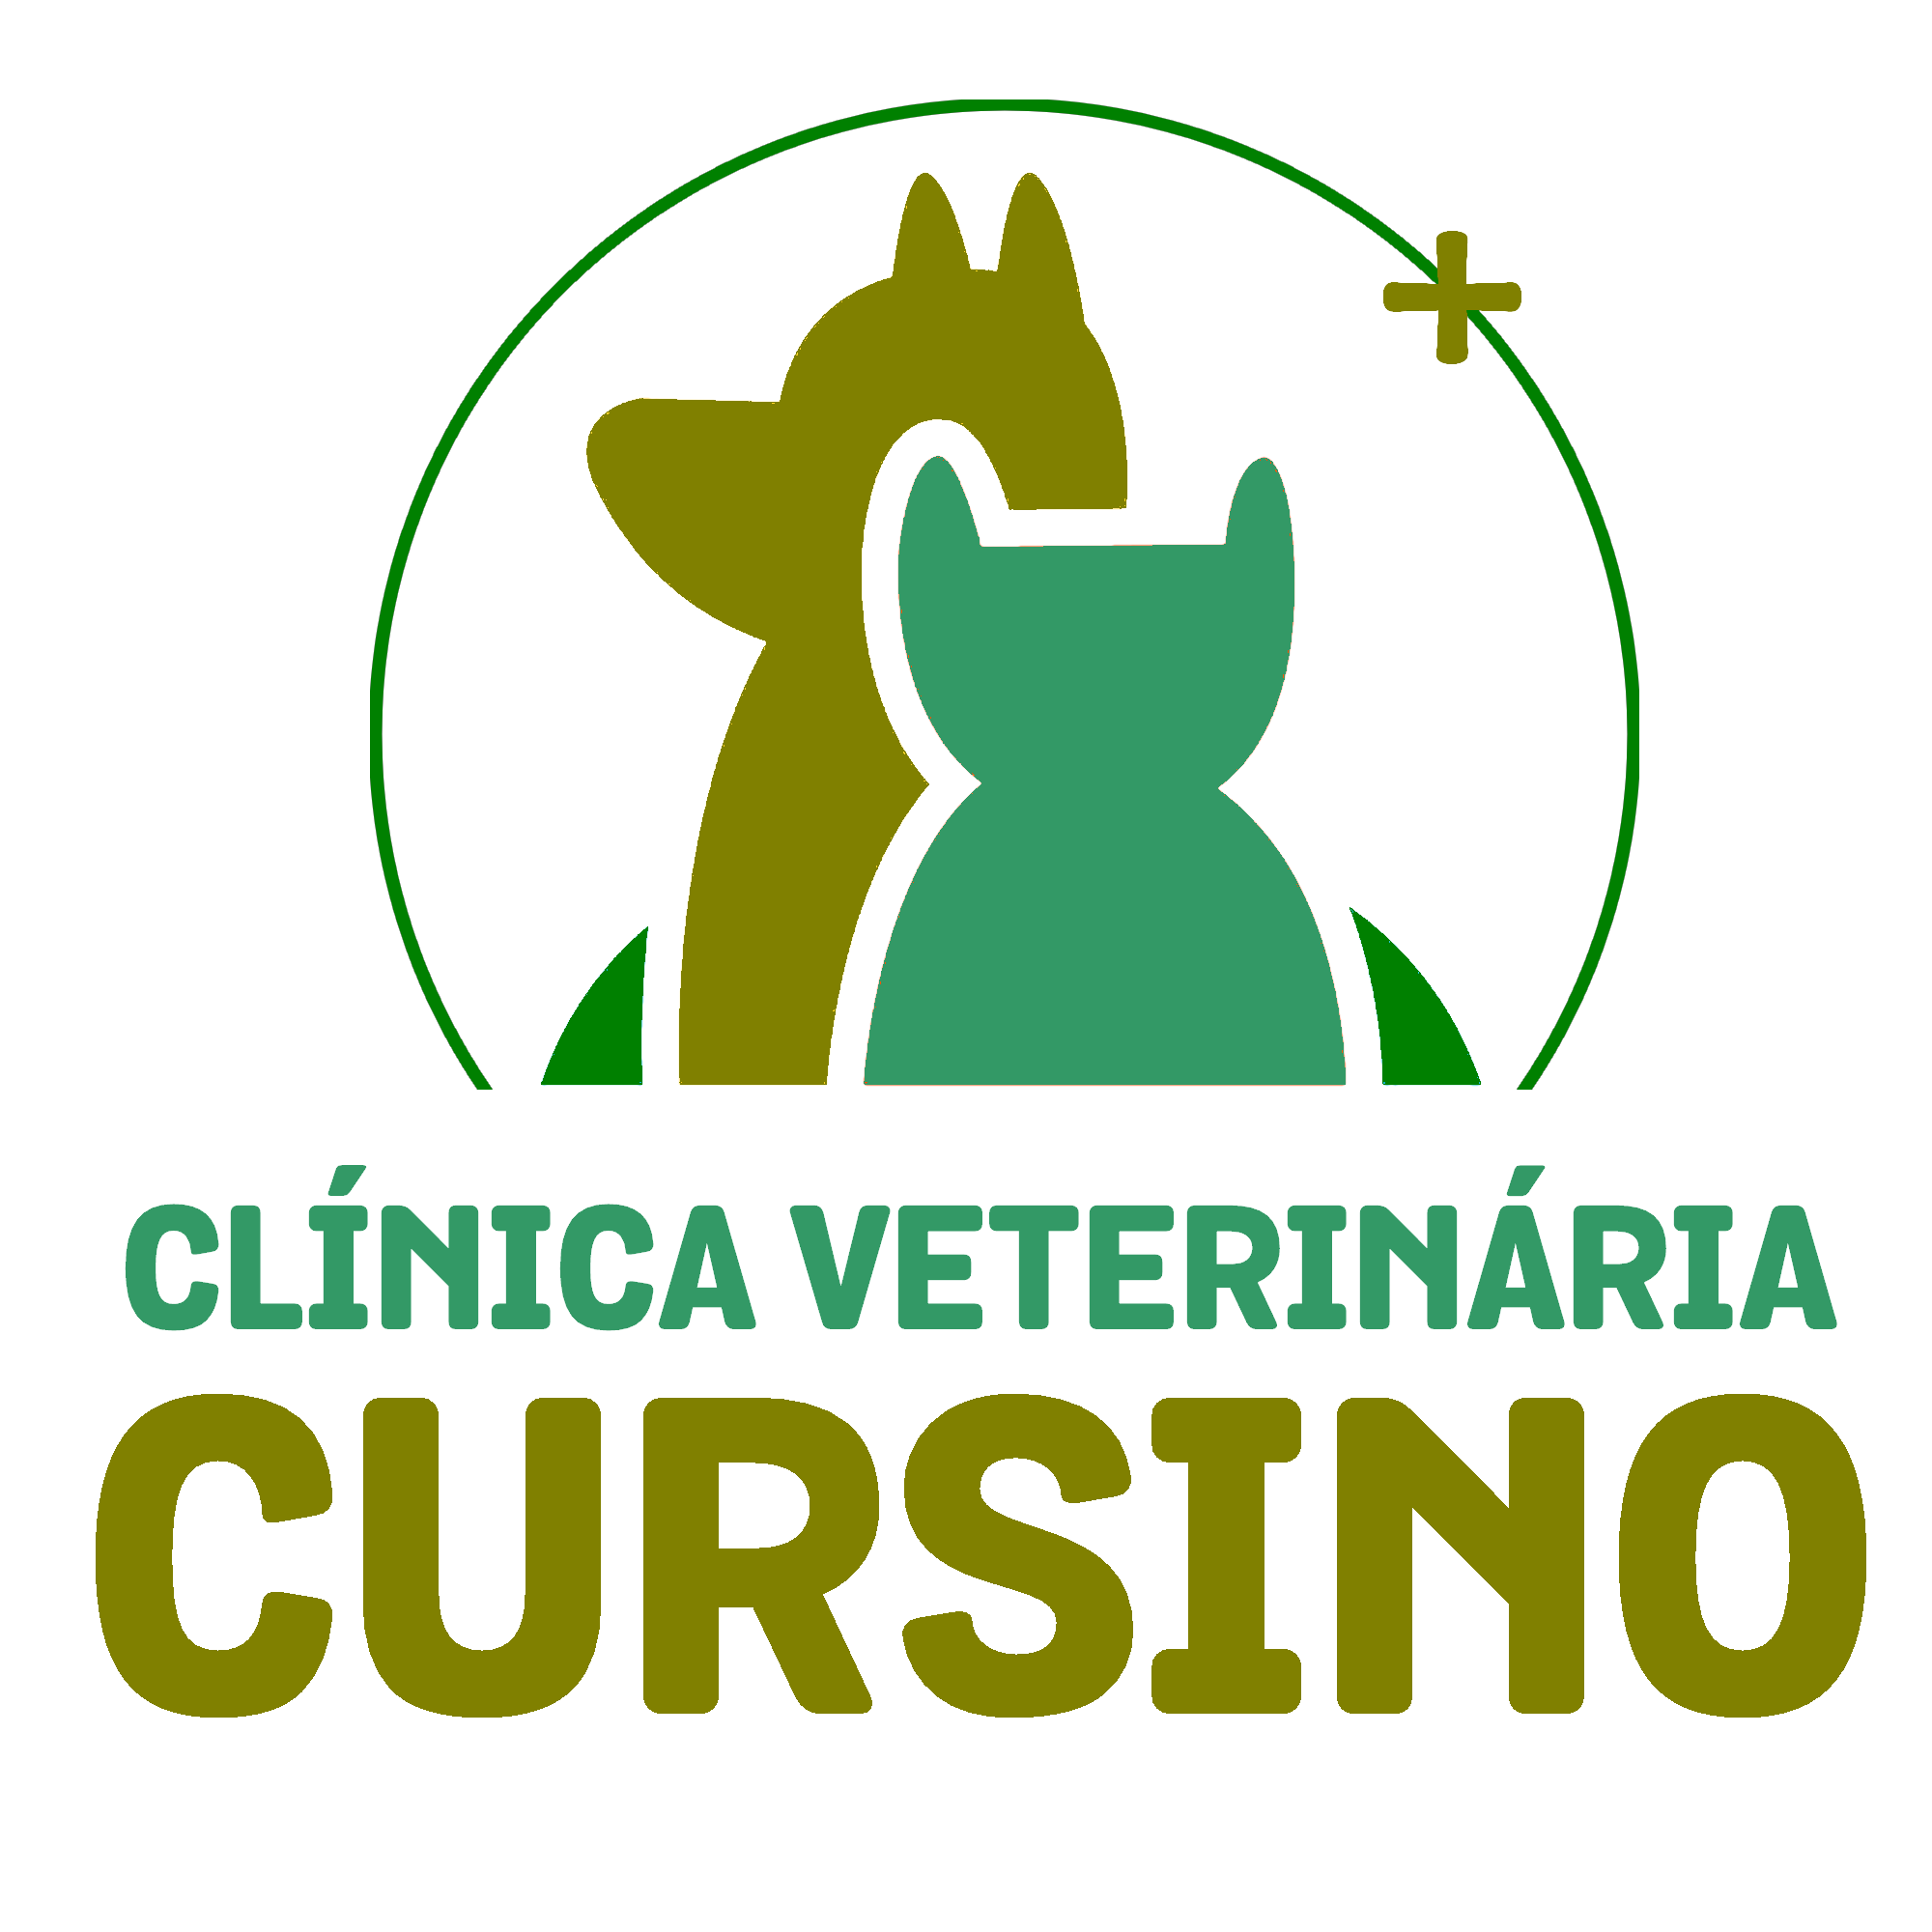 Clínica Veterinária Cursino